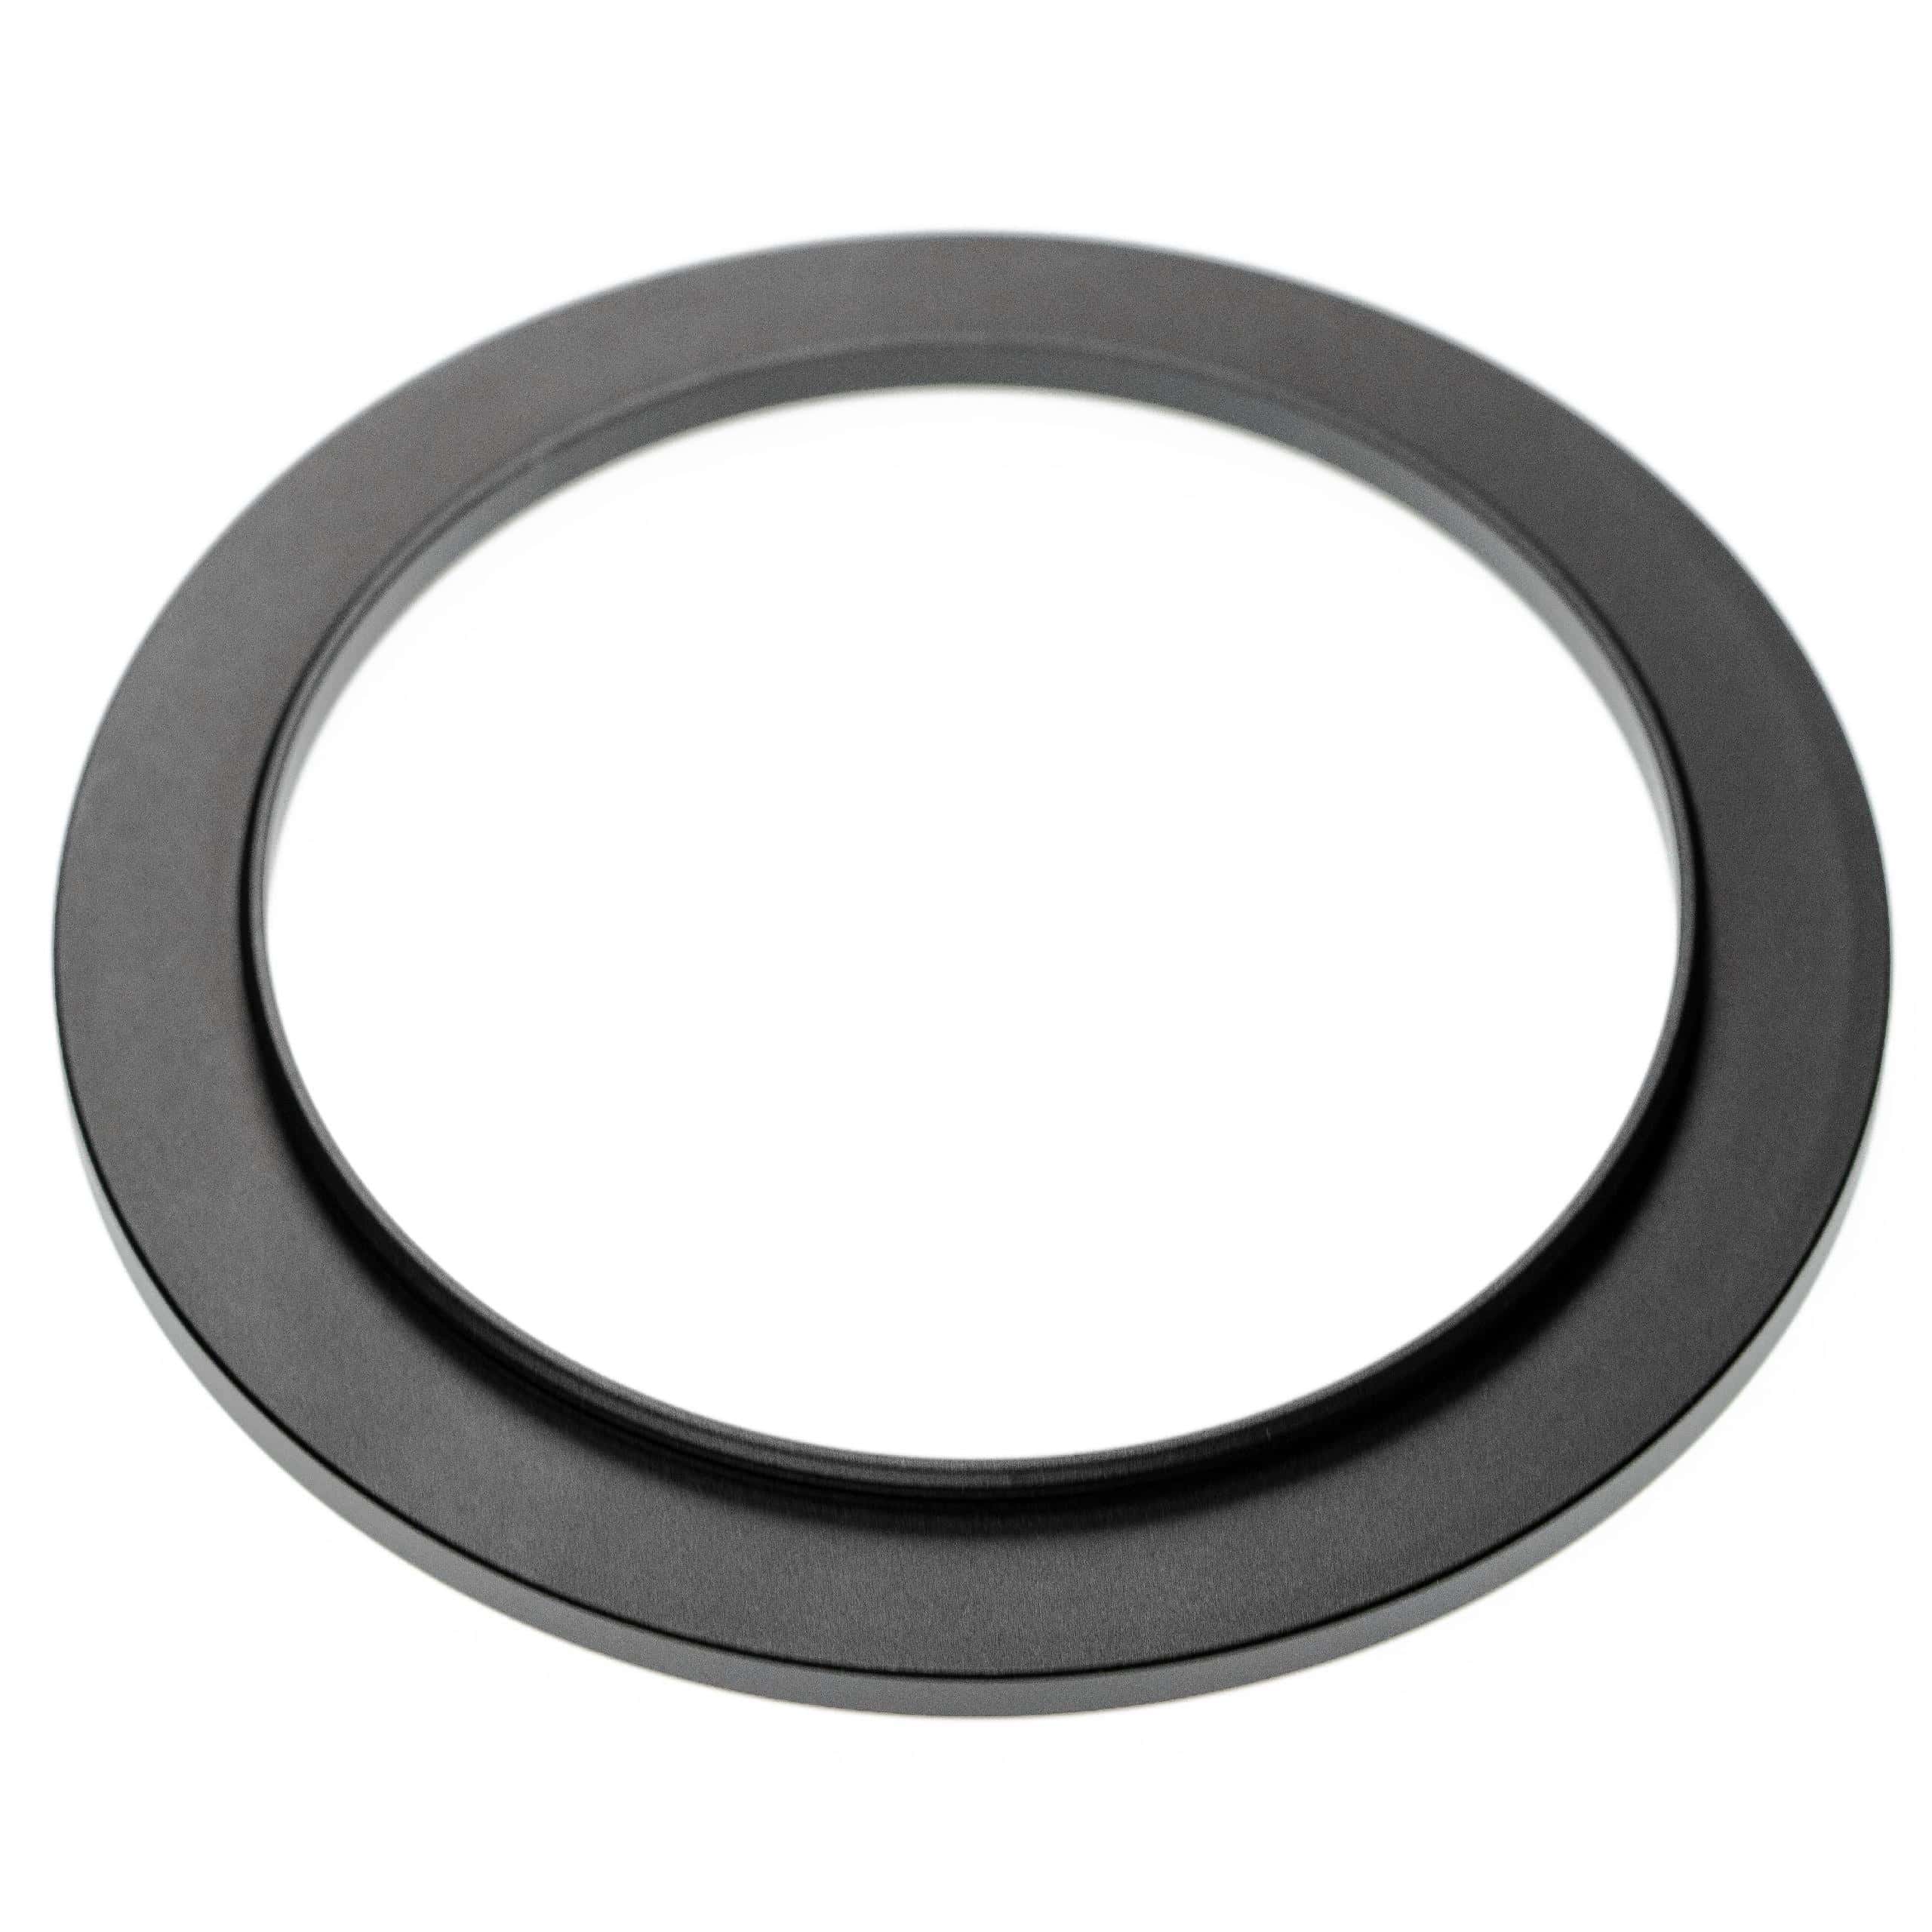 Step-Up-Ring Adapter 86 mm auf 105 mm passend für diverse Kamera-Objektive - Filteradapter